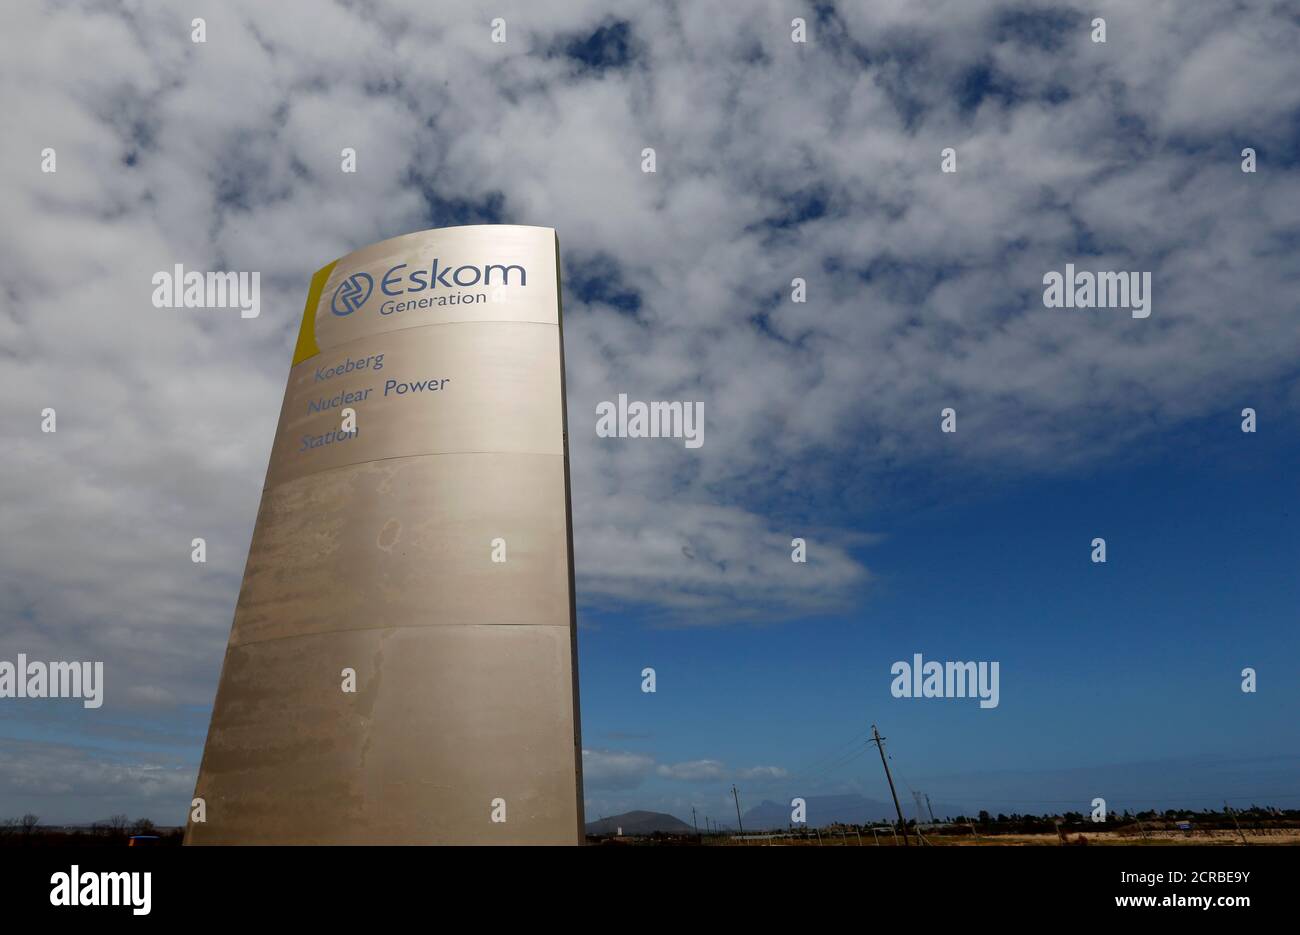 Das Logo des staatlichen Energieversorgers Eskom ist vor dem Kernkraftwerk Koeberg in Kapstadt zu sehen, auf diesem Bild, das am 20. März 2016 aufgenommen wurde. REUTERS/Mike Hutchings Stockfoto